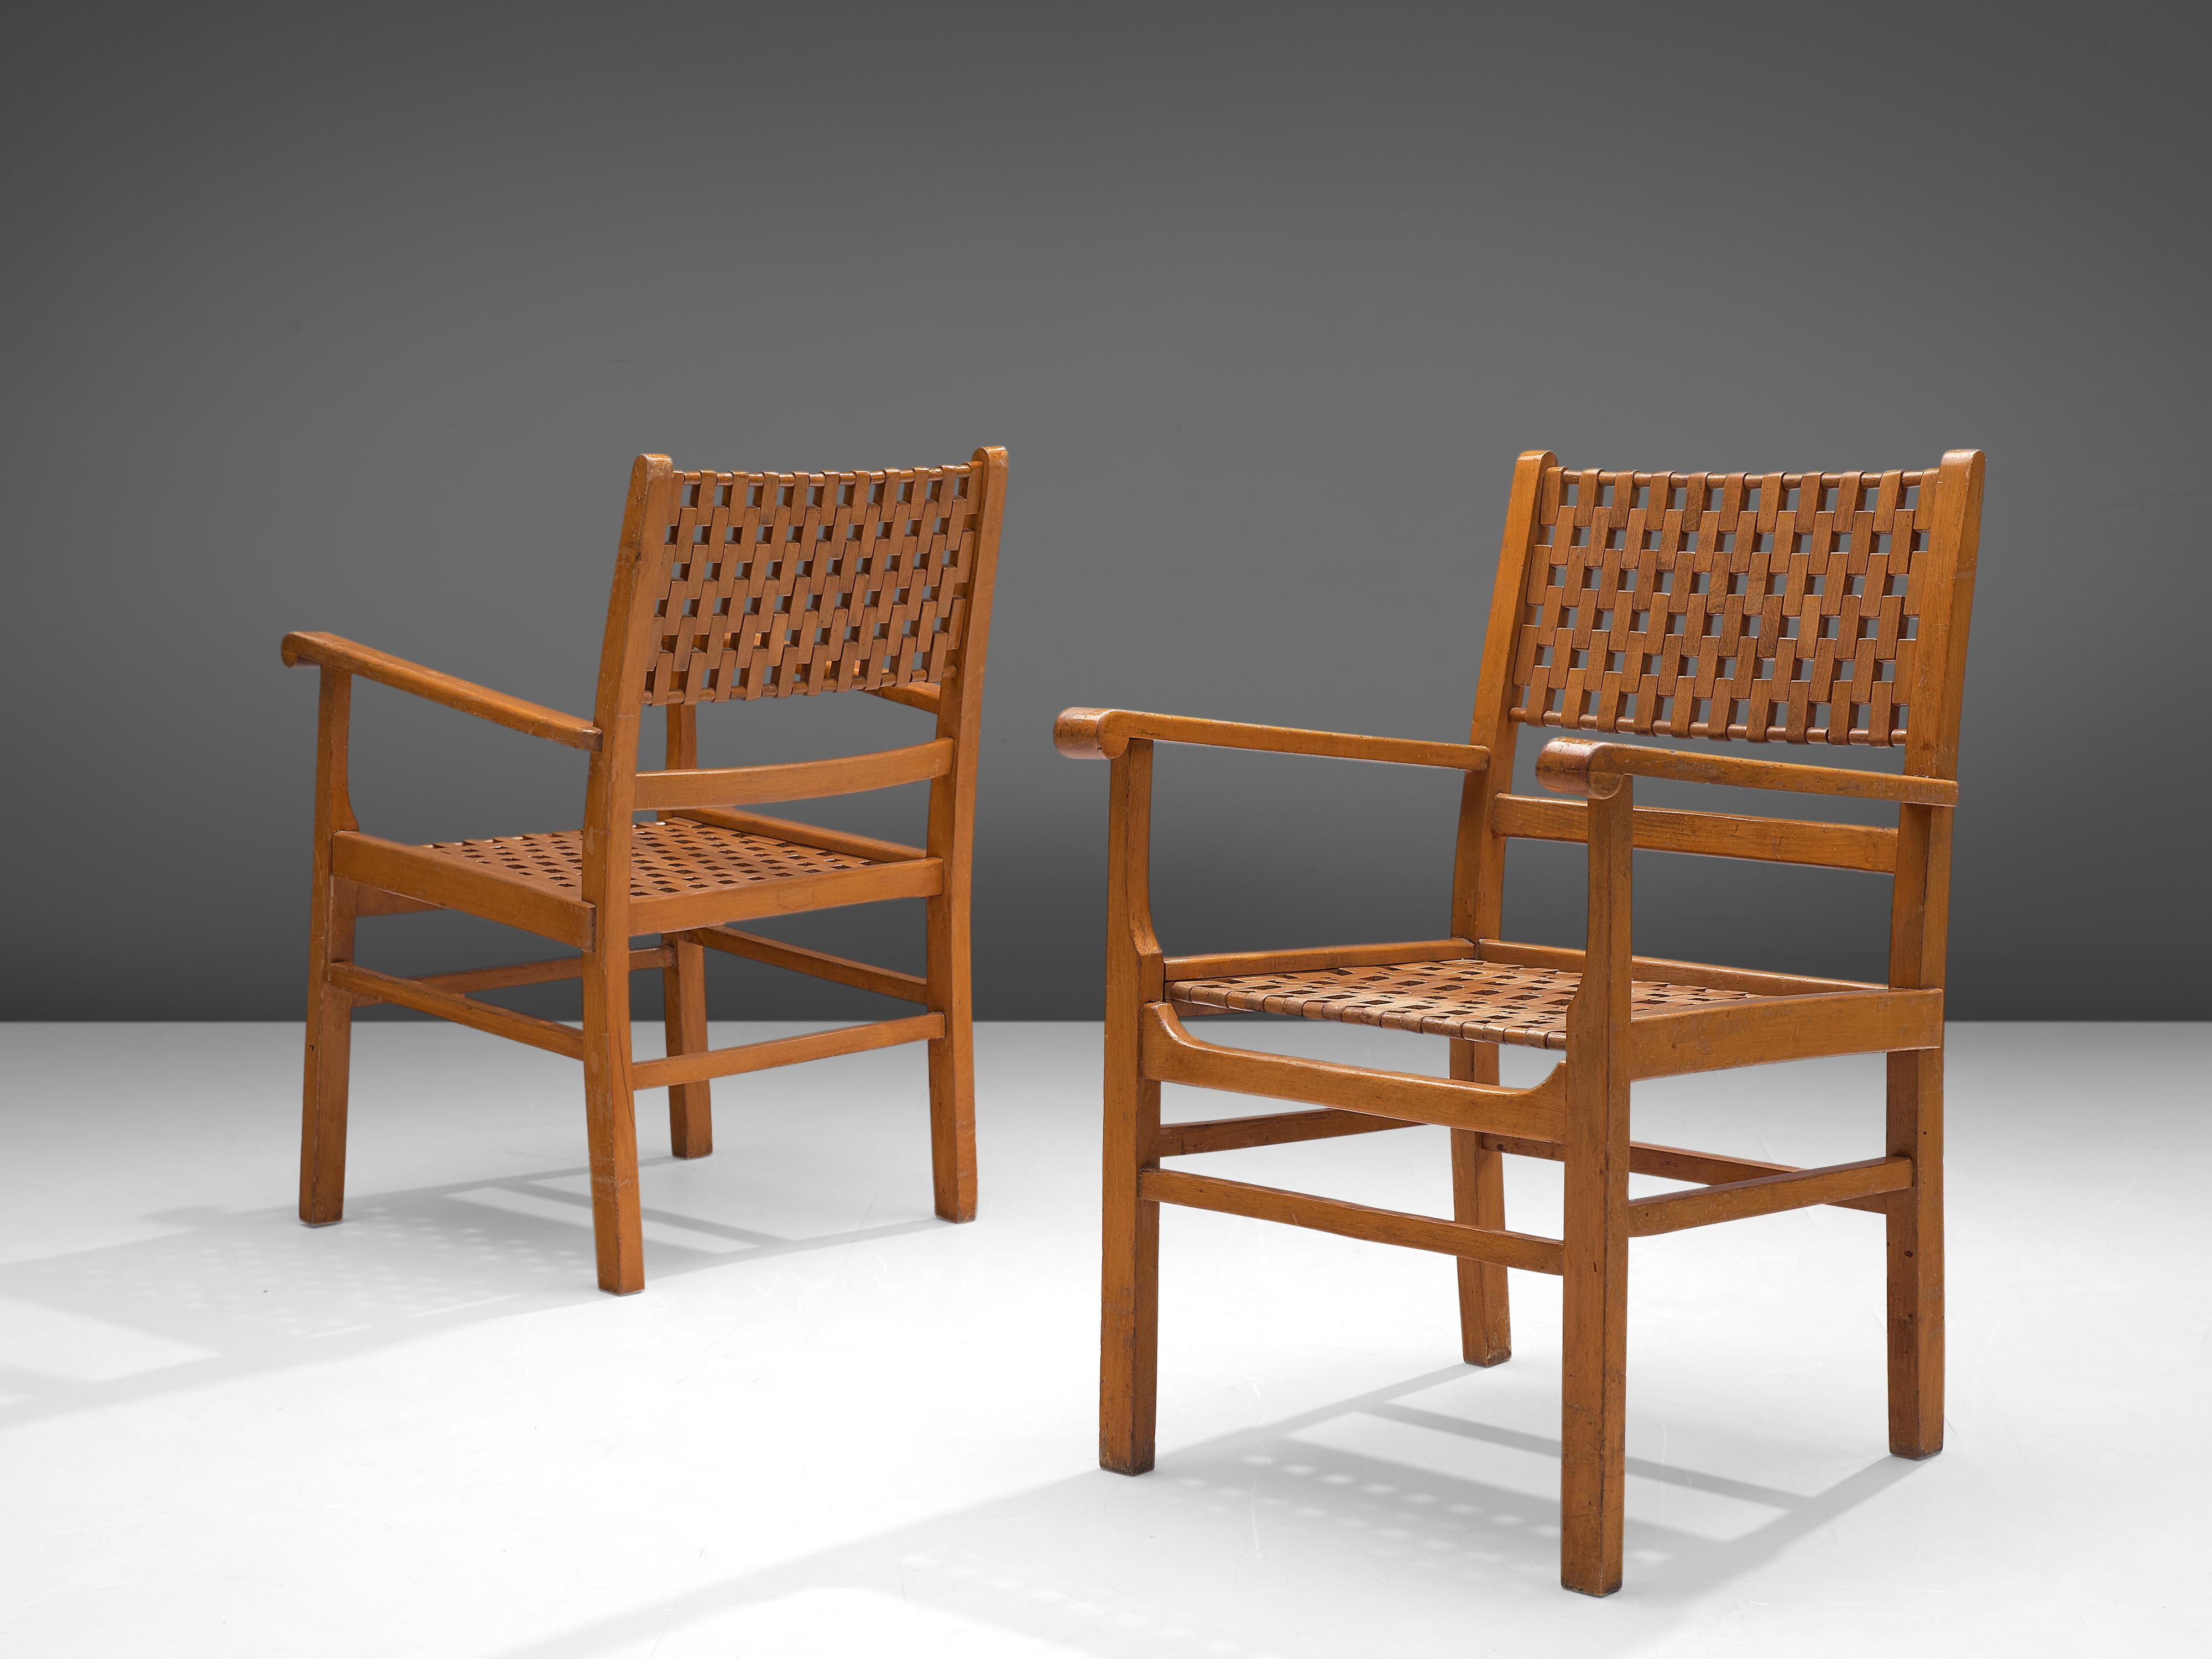 Zwei Sessel, Buche, Europa, 1930er Jahre.

Dieses Stuhlset ist aus Massivholz mit einer geometrischen Rückenlehne und Sitzfläche aus Holz gefertigt. Der Stil ist typisch für das Vorkriegsdesign. Verspielte, kühne Linien und experimentelle Techniken